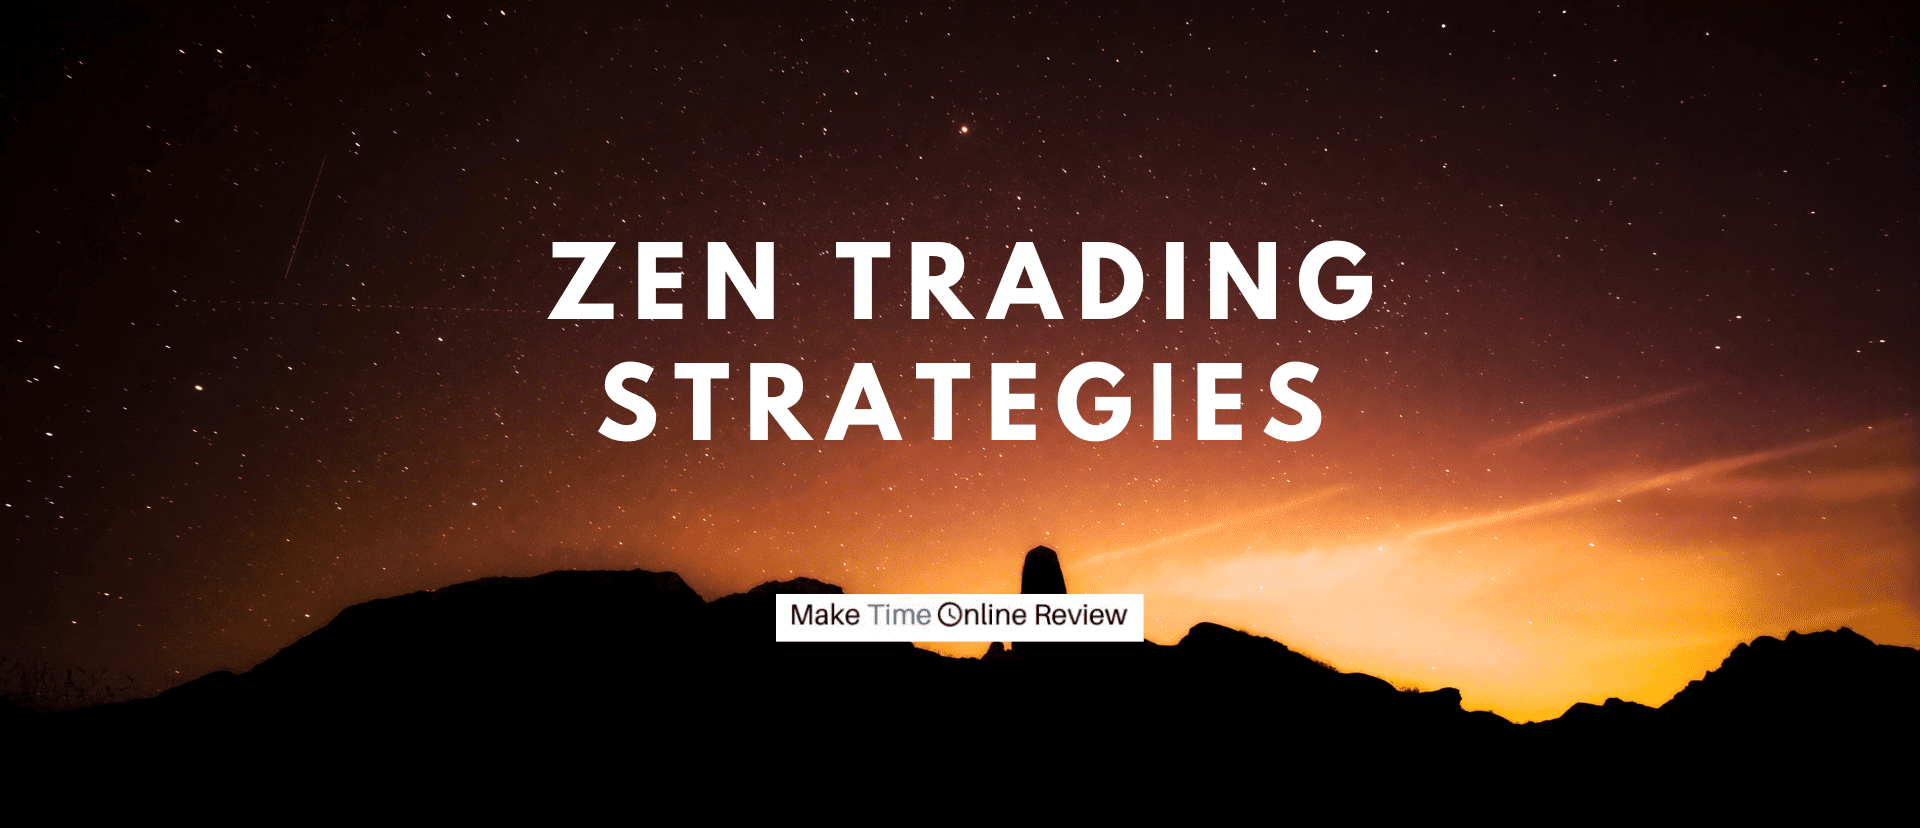 Zen Trading Strategies